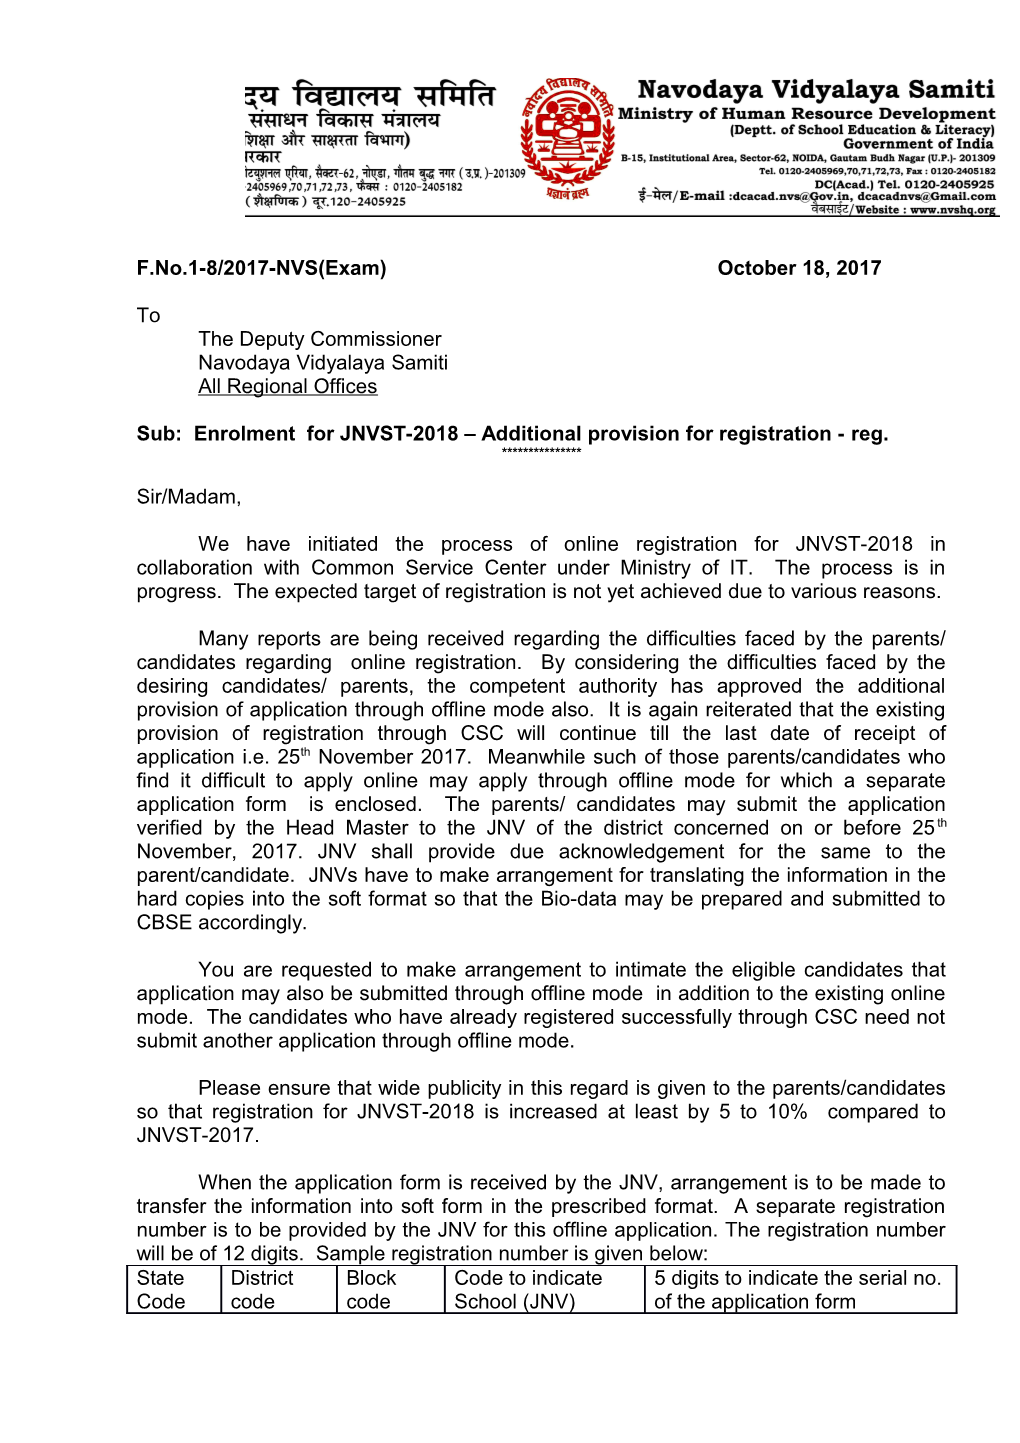 Sub:Enrolment for JNVST-2018 Additional Provision for Registration - Reg